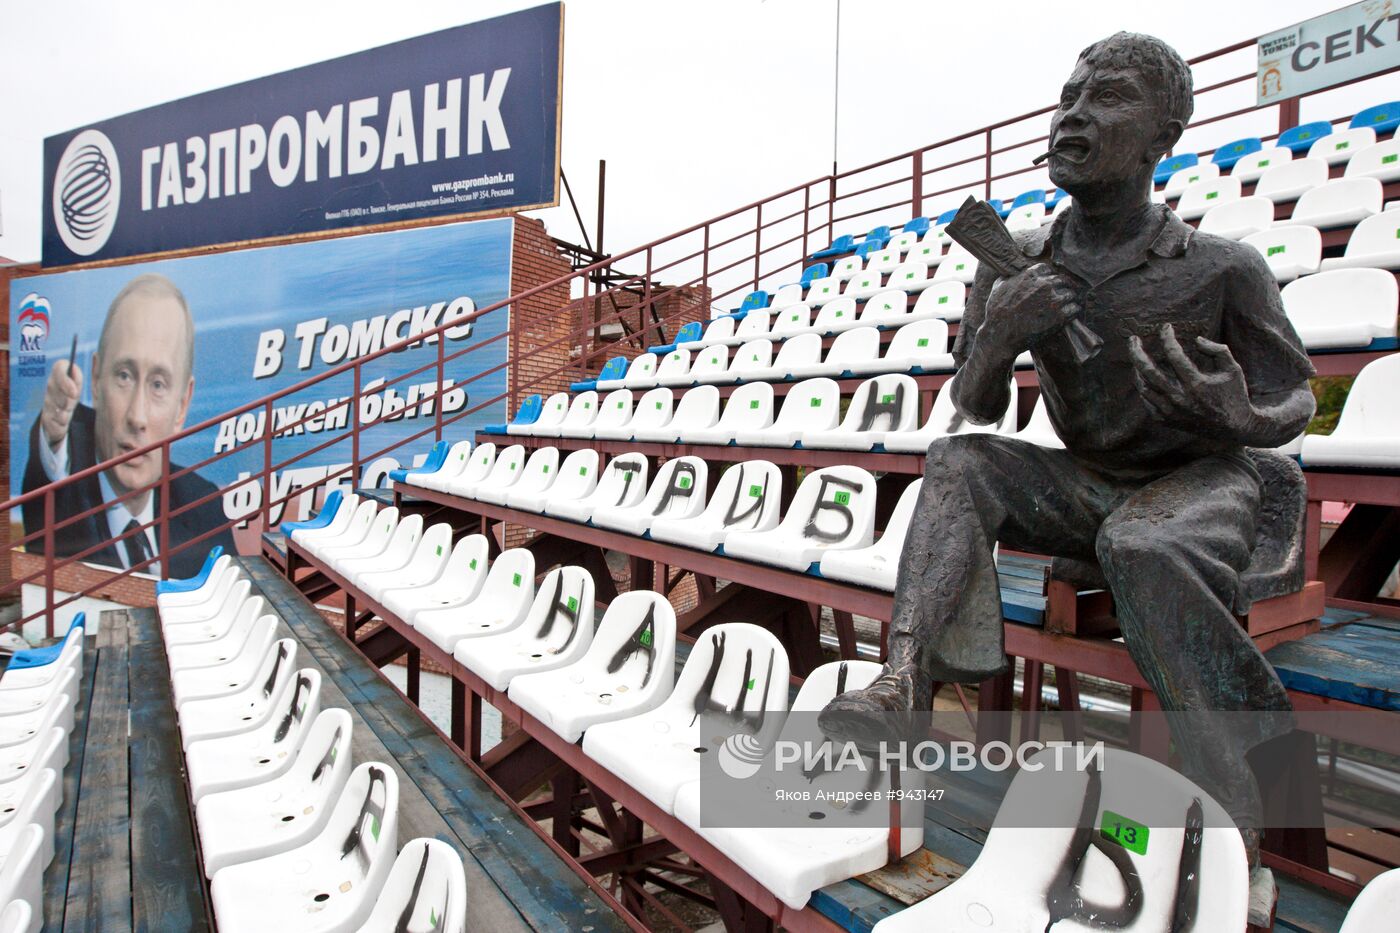 Стадион "Труд" в городе Томске